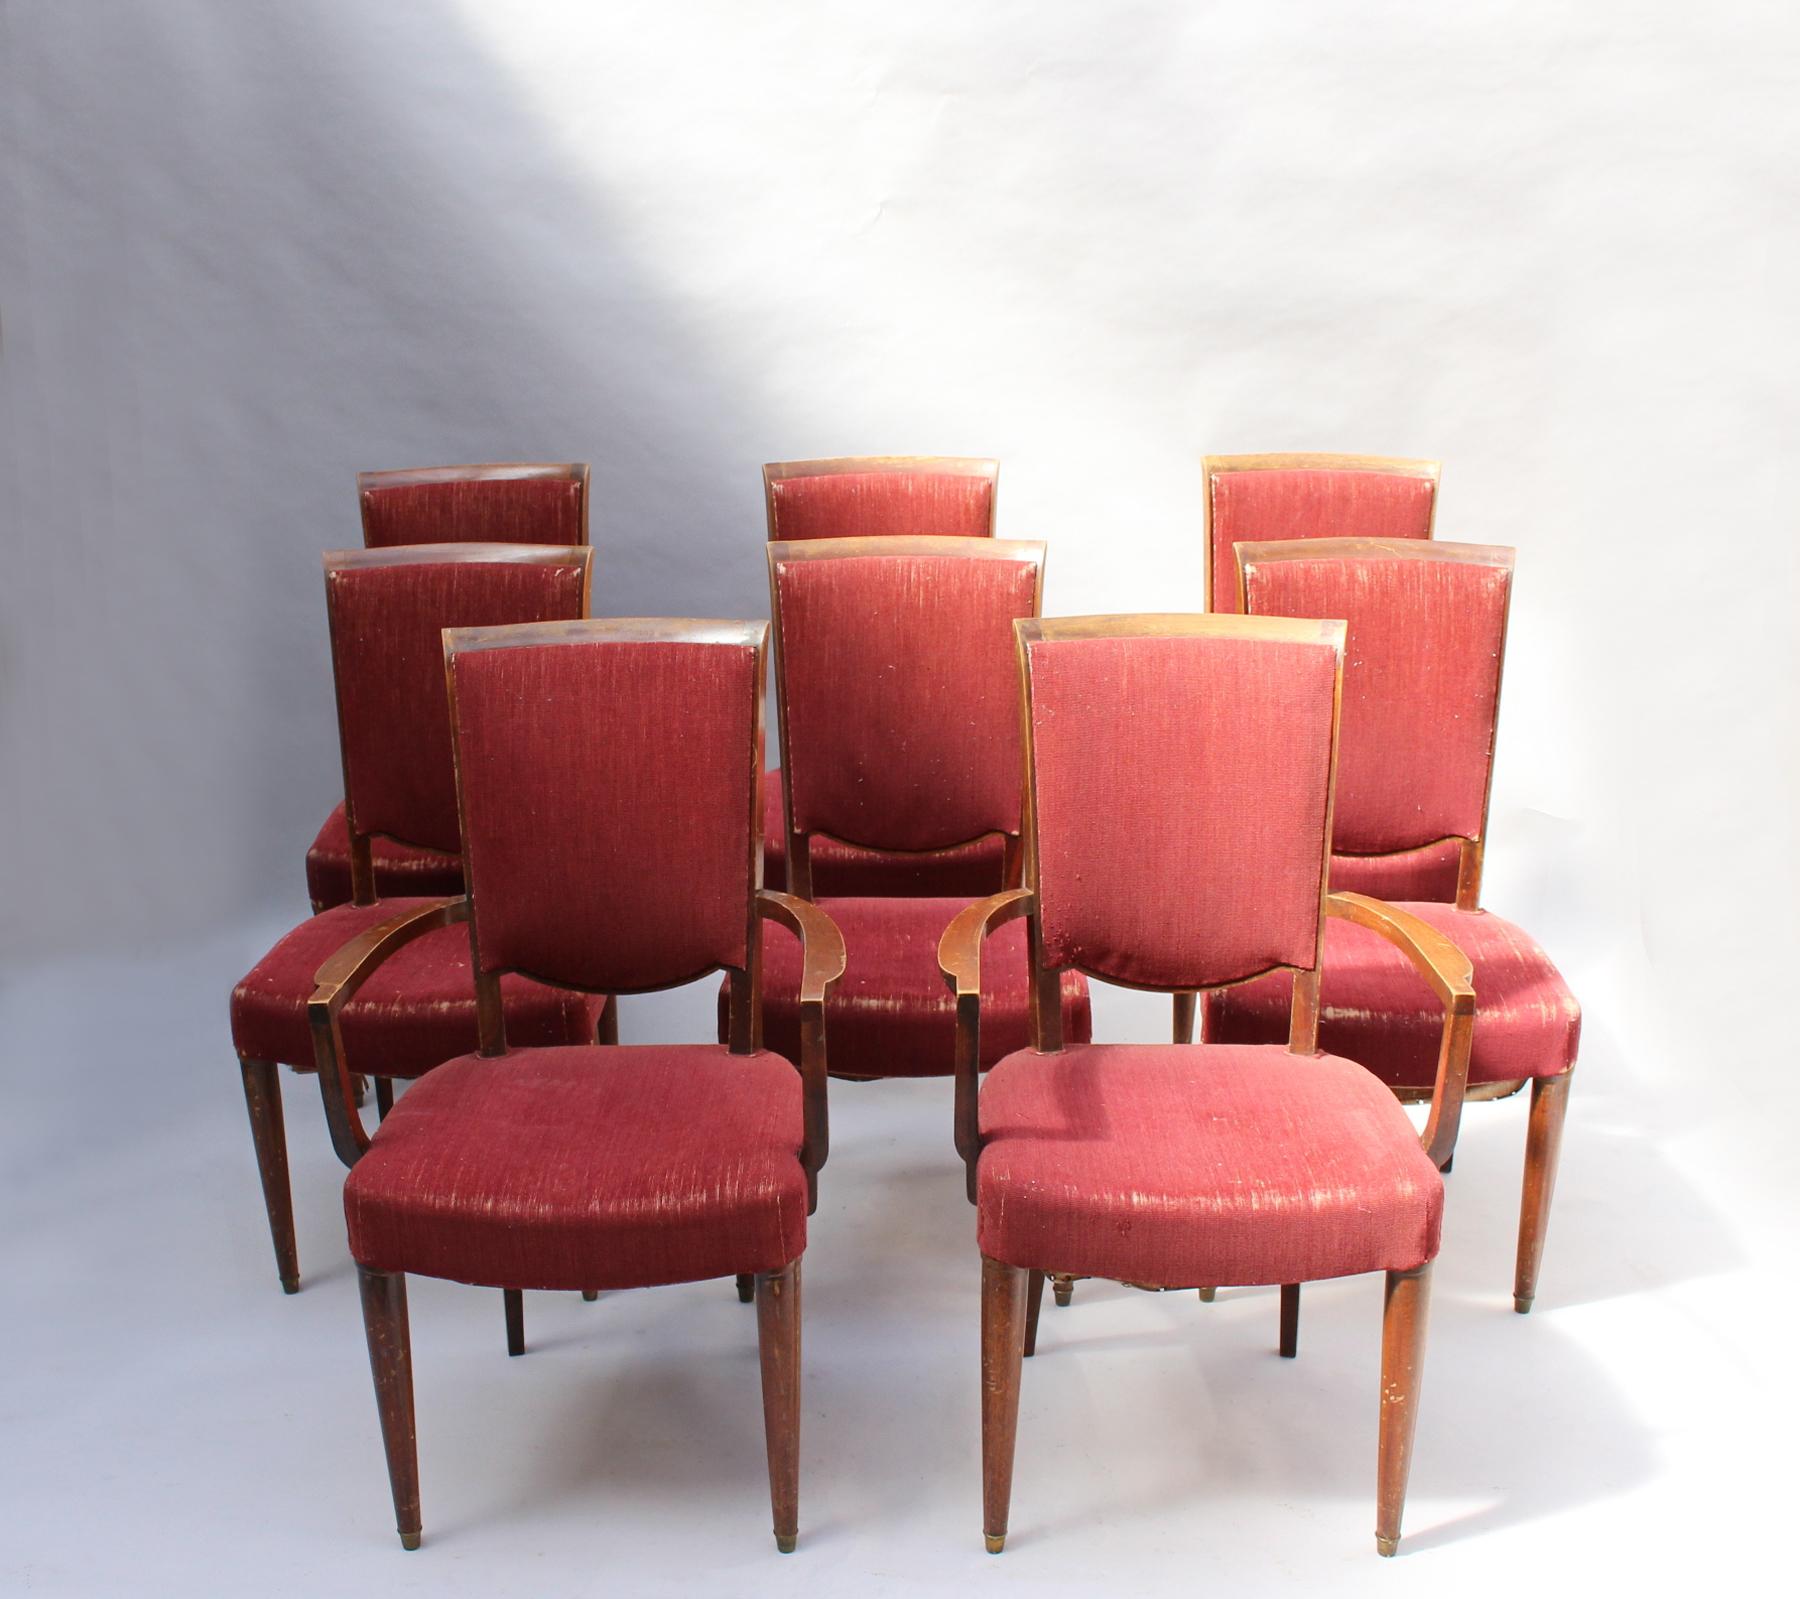 Ein Satz von 8 feinen französischen Art Deco Mahagoni-Esszimmerstühlen (6 Seiten- und 2 Armstühle) von Jules Leleu.
Preis inklusive Nachbearbeitung.
Dokumentiert: siehe Bilder.

Abmessungen Sessel:
H 35 5/8